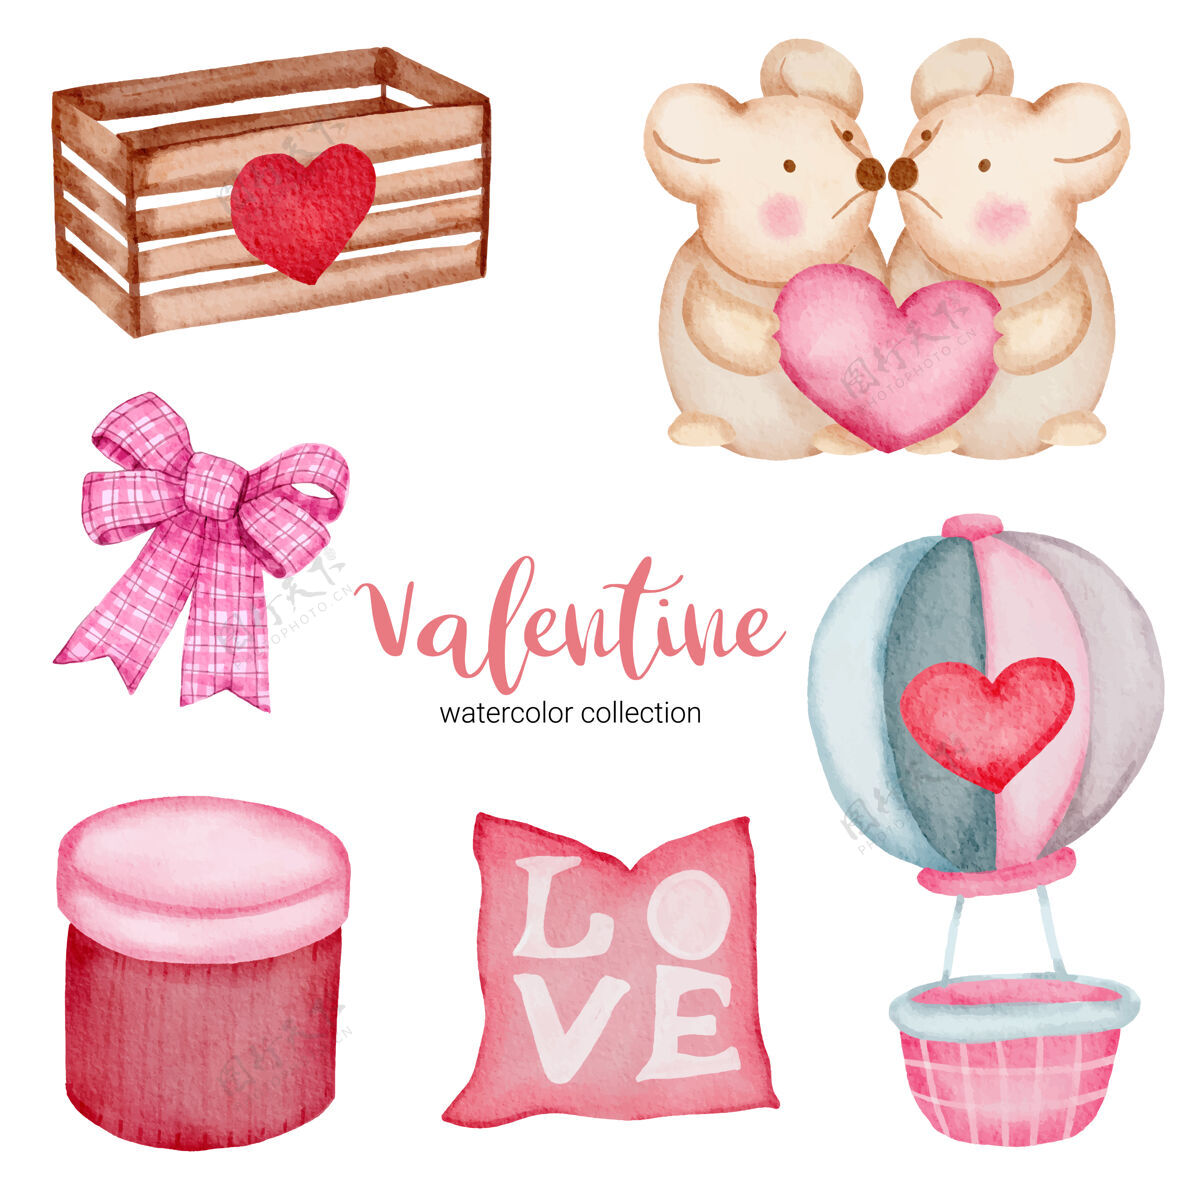 浪漫情人节套装元素枕头 气球 鼠标等设置浪漫水彩